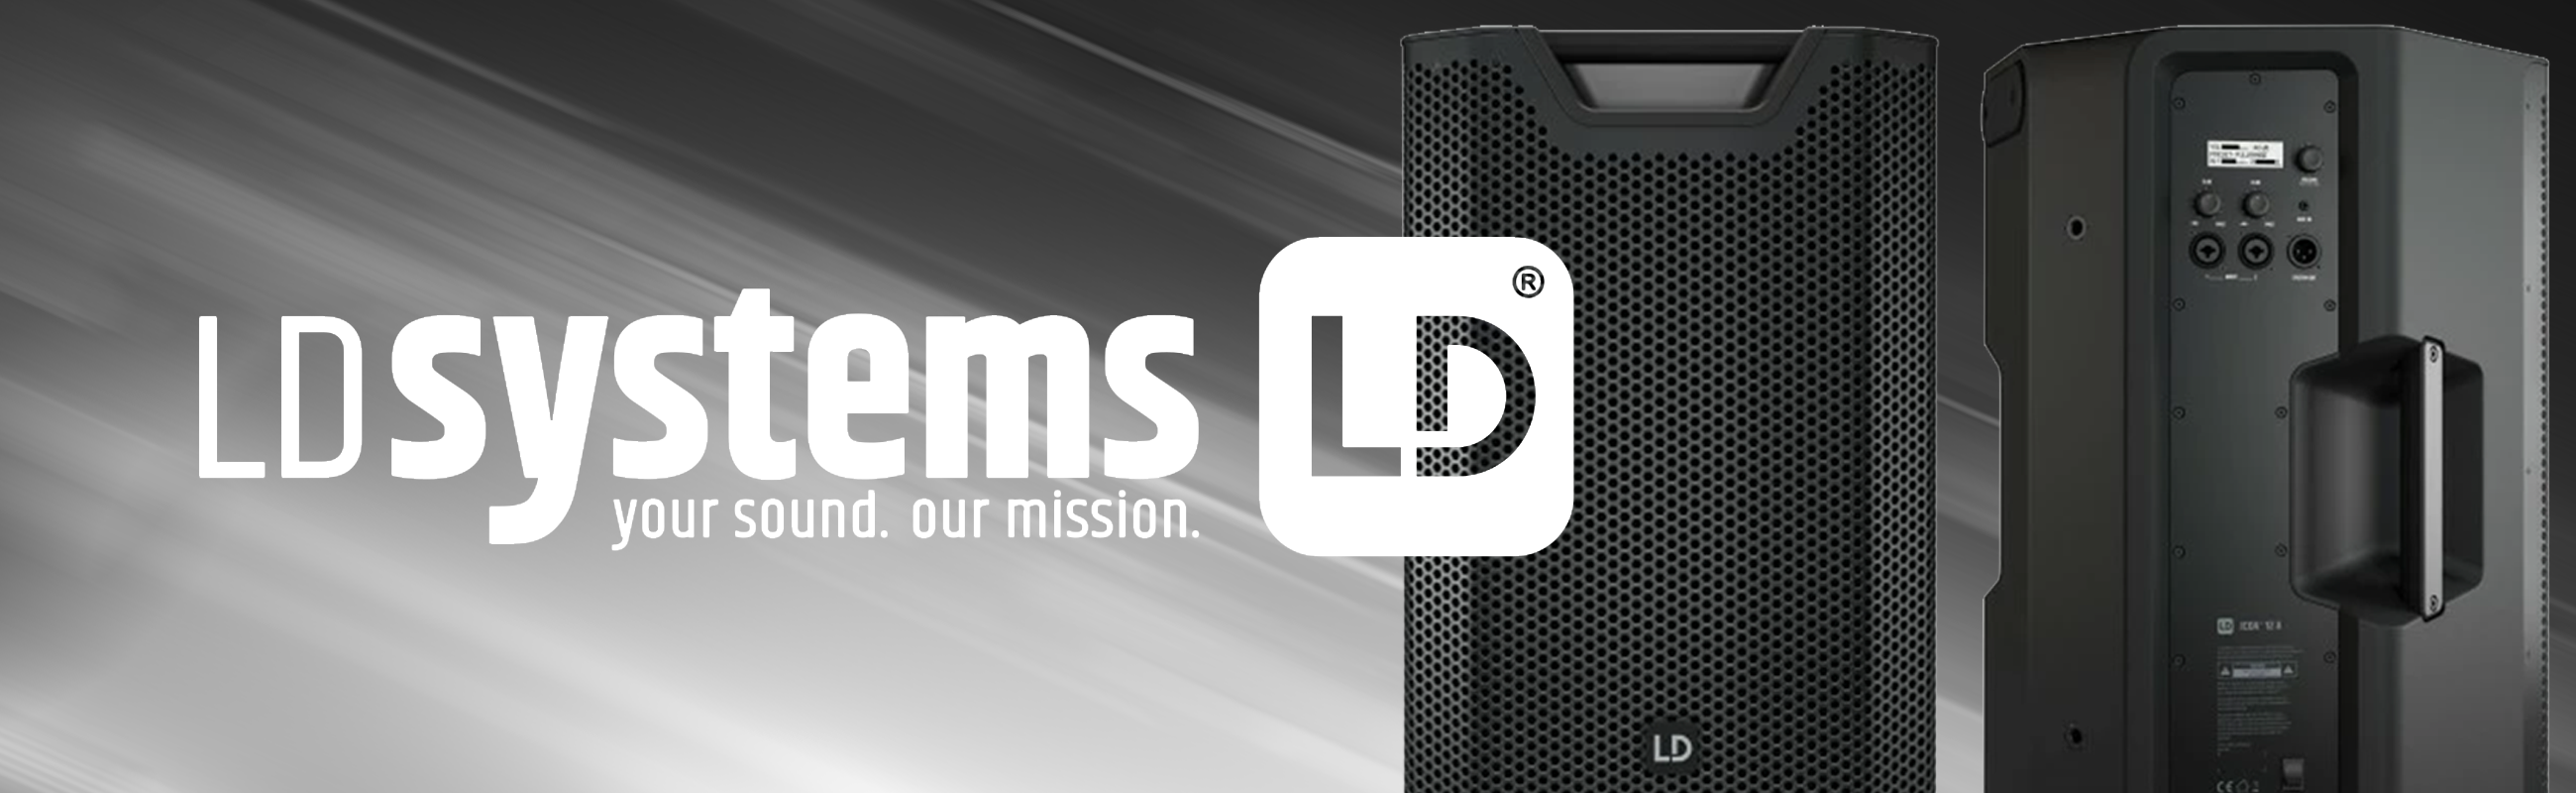 LD Systems Icoa 12